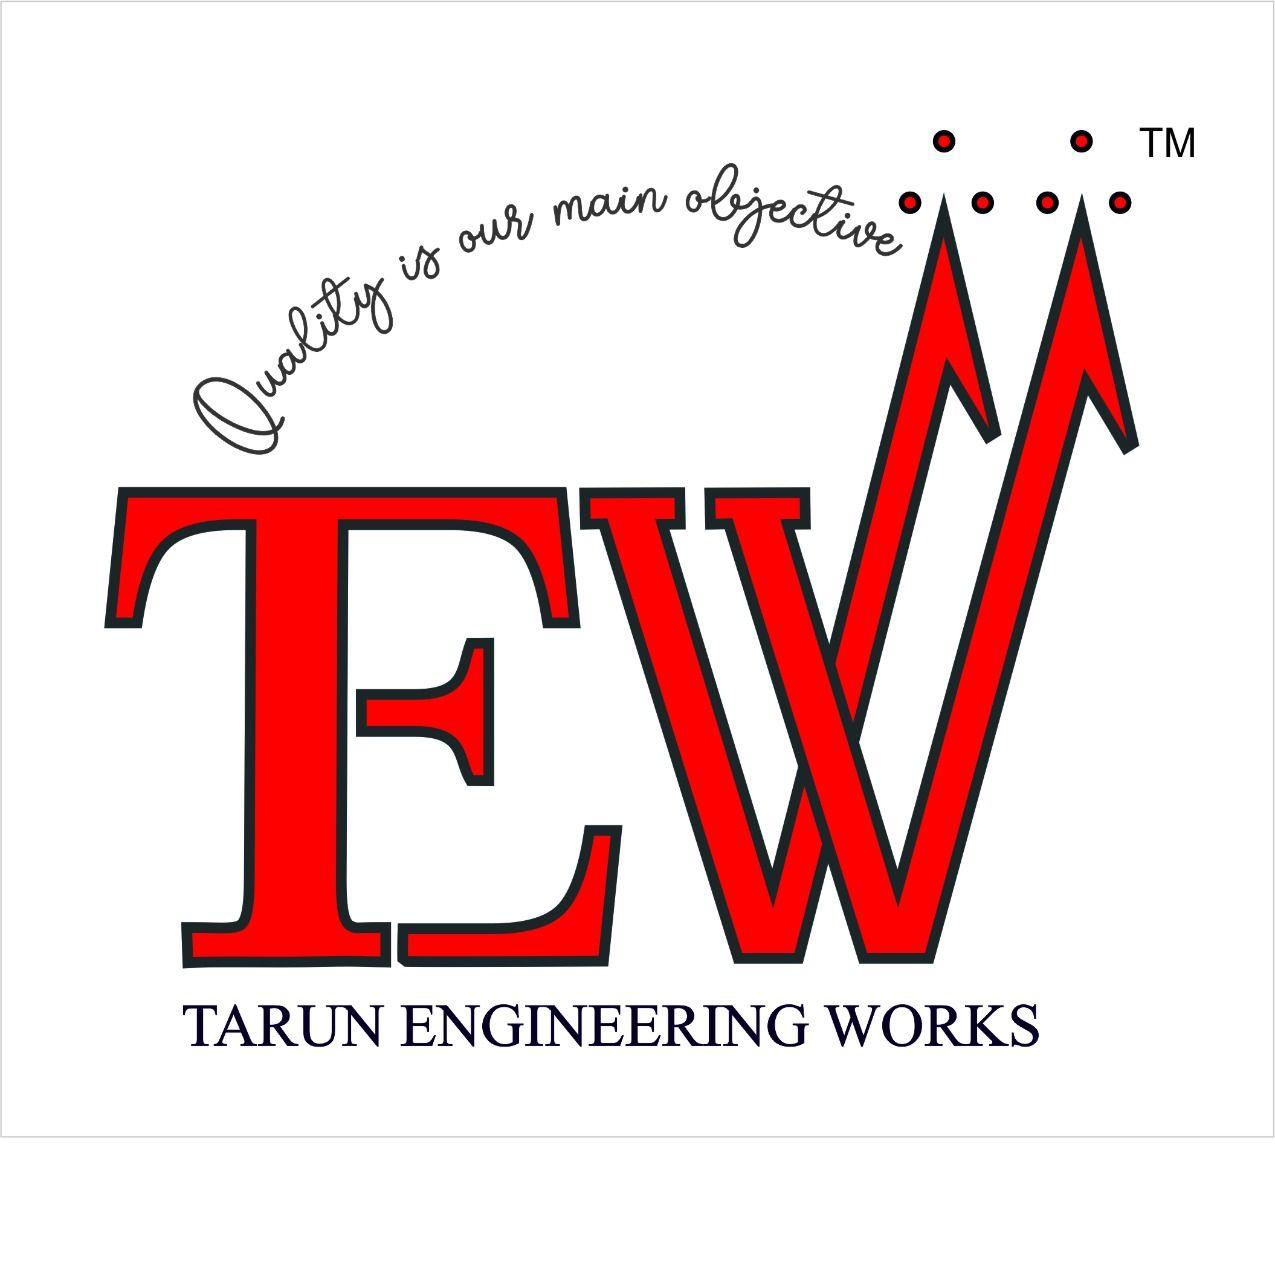 TARUN ENGINEERING WORKS